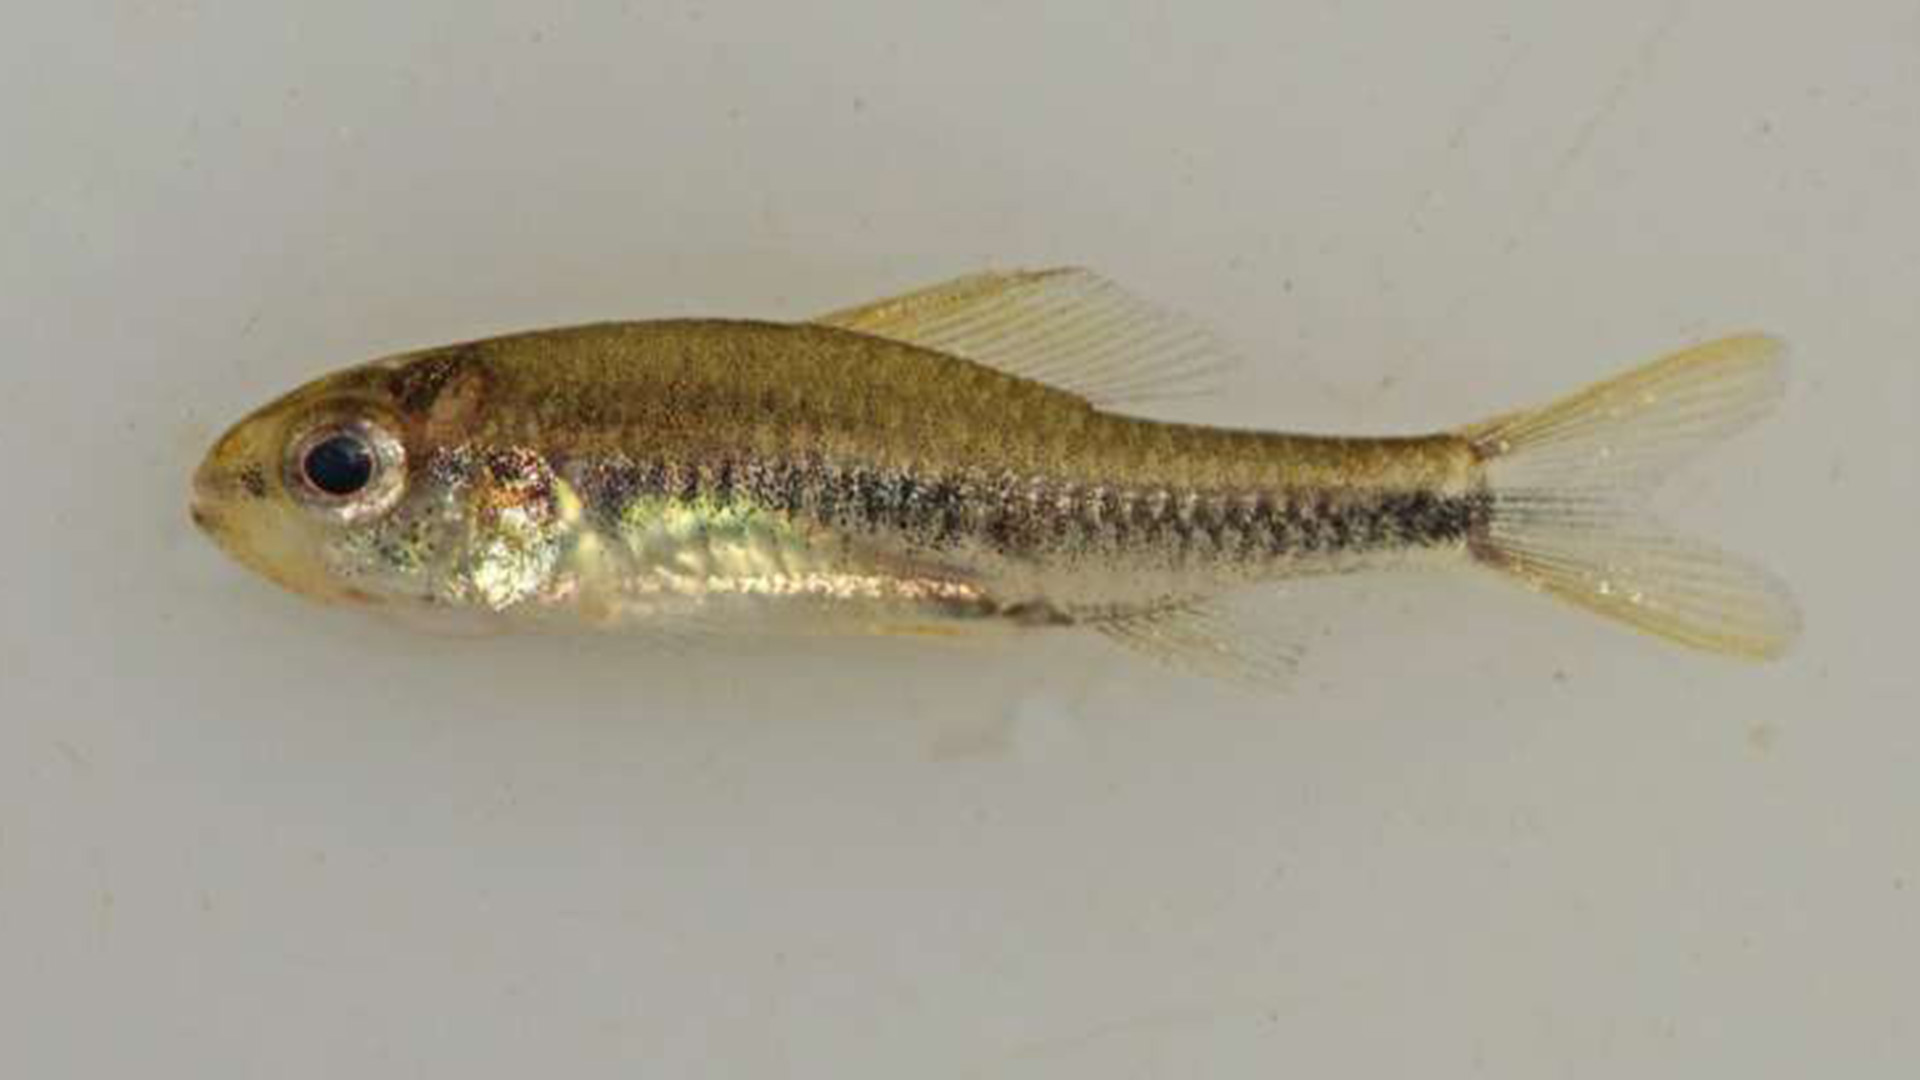 El Poecilocharax rhizophilus recientemente descrito, ejemplar hembra. Los adultos de esta especie se consideran peces en miniatura ya que nunca miden más de una pulgada
(Gentileza: Murilo NL Pastana y Willian M. Ohara)